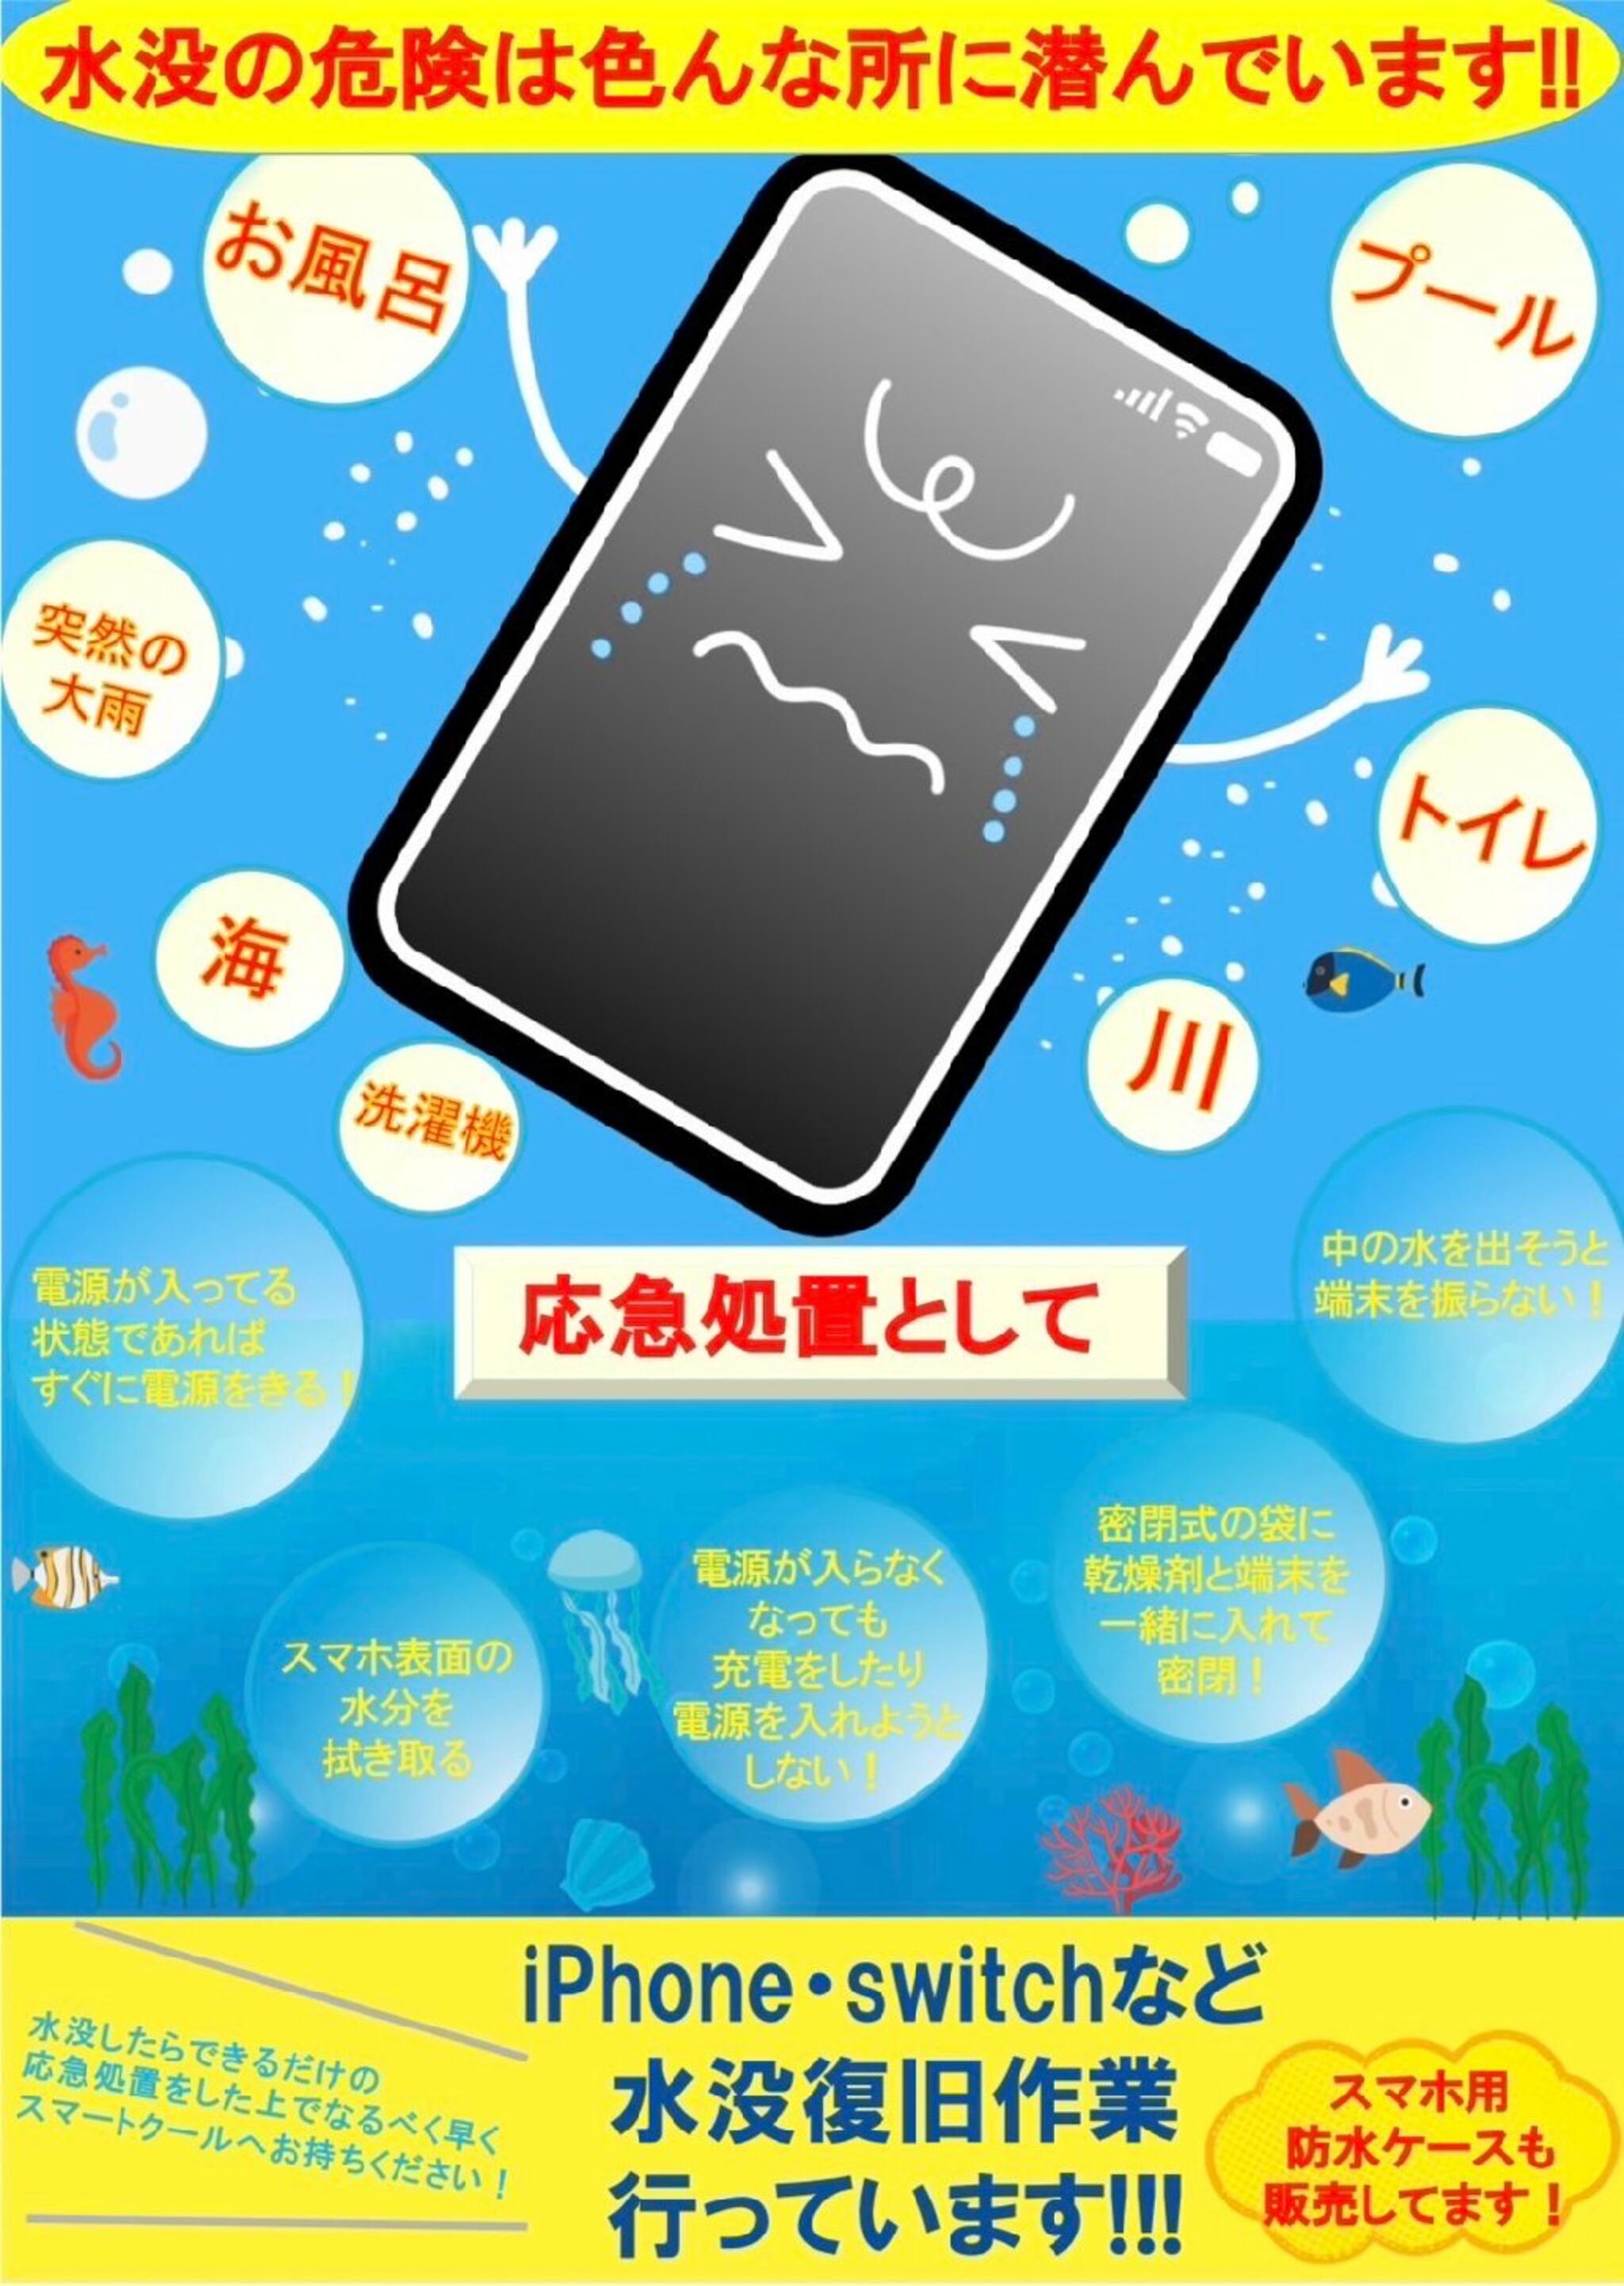 iPhone・iPad・Switch修理店 スマートクール イオンモール広島祇園店からのお知らせ(スマホ の水没に注意しましょう！)に関する写真